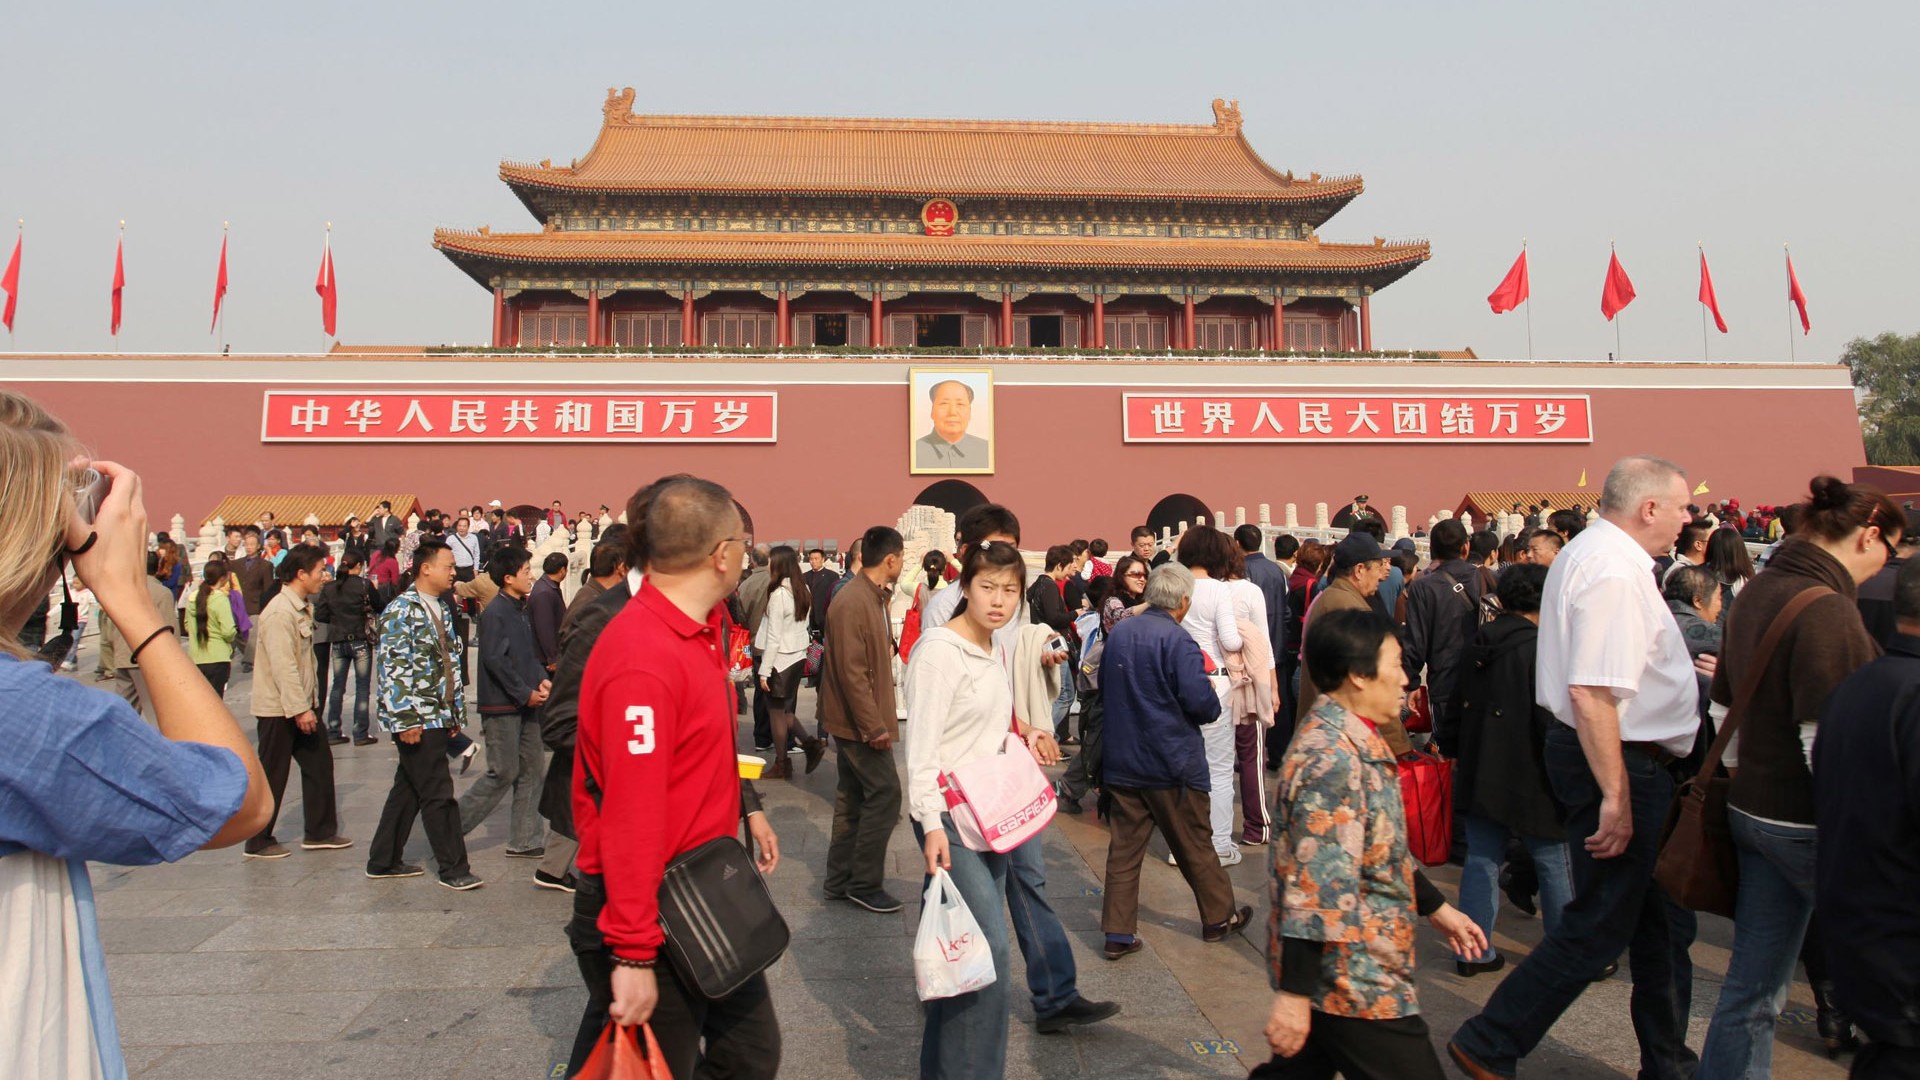 Tour Beijing - Platz des Himmlischen Friedens (GGC Werke) #12 - 1920x1080